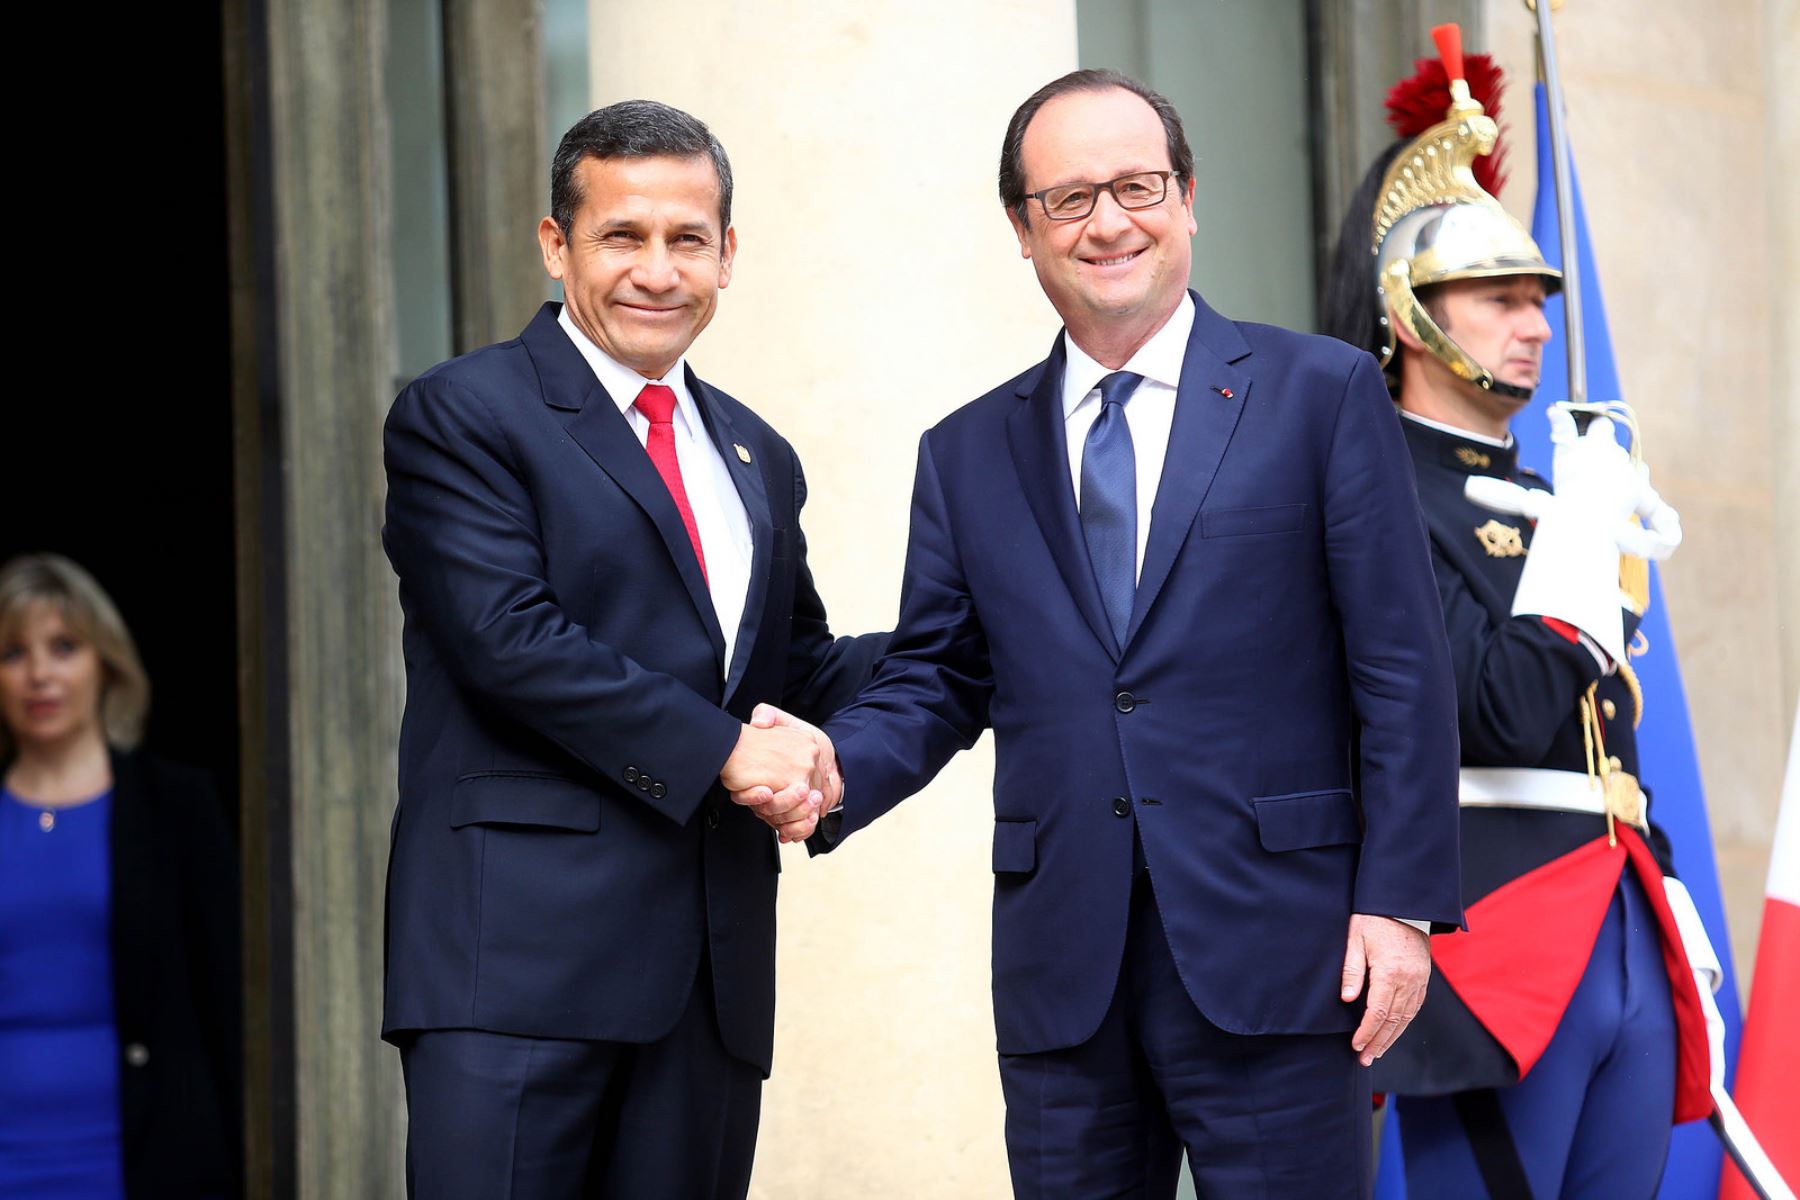 Presidente de la República, Ollanta Humala Tasso, sostuvo encuentro con mandatario francés François Hollande en París